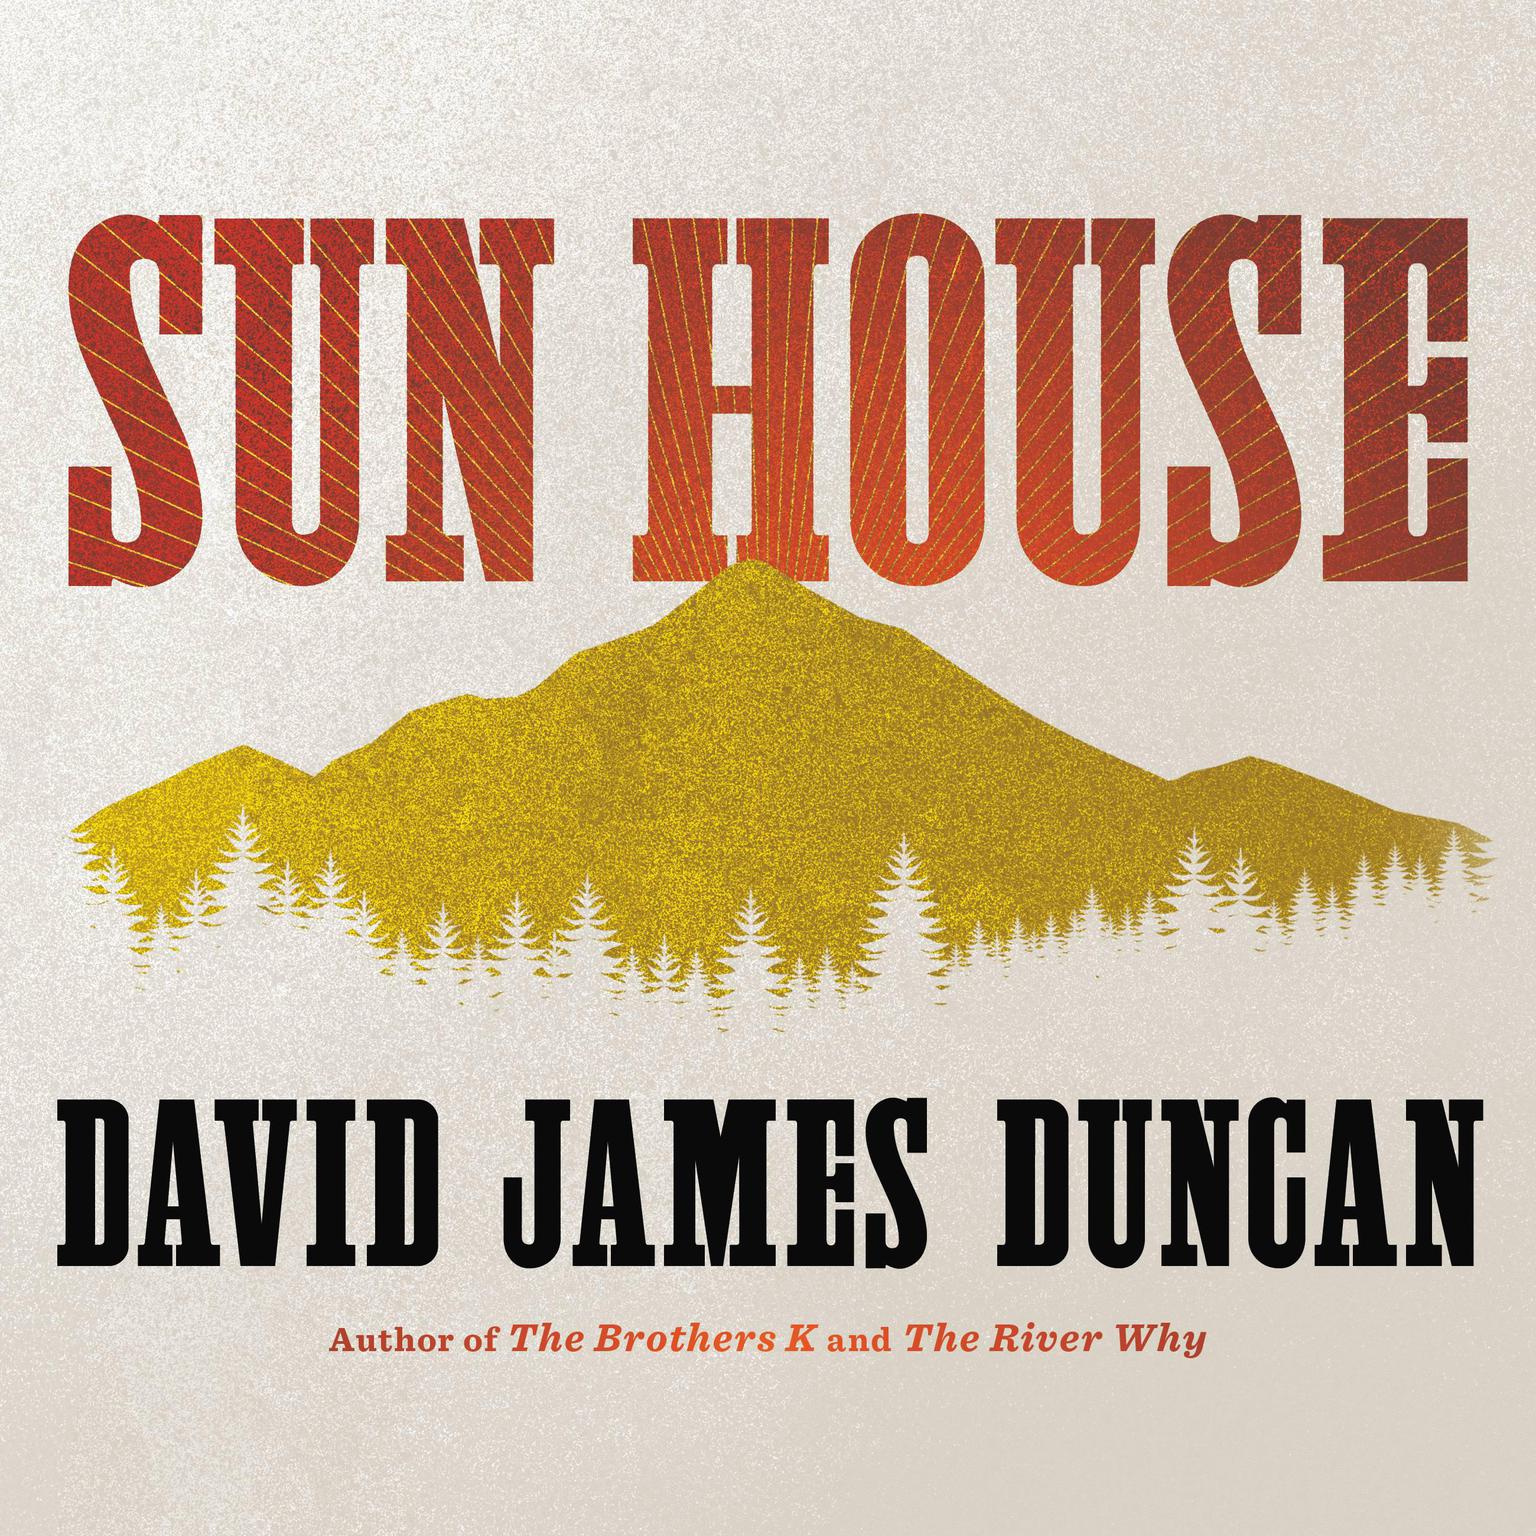 Sun House: A Novel Audiobook, by David James Duncan